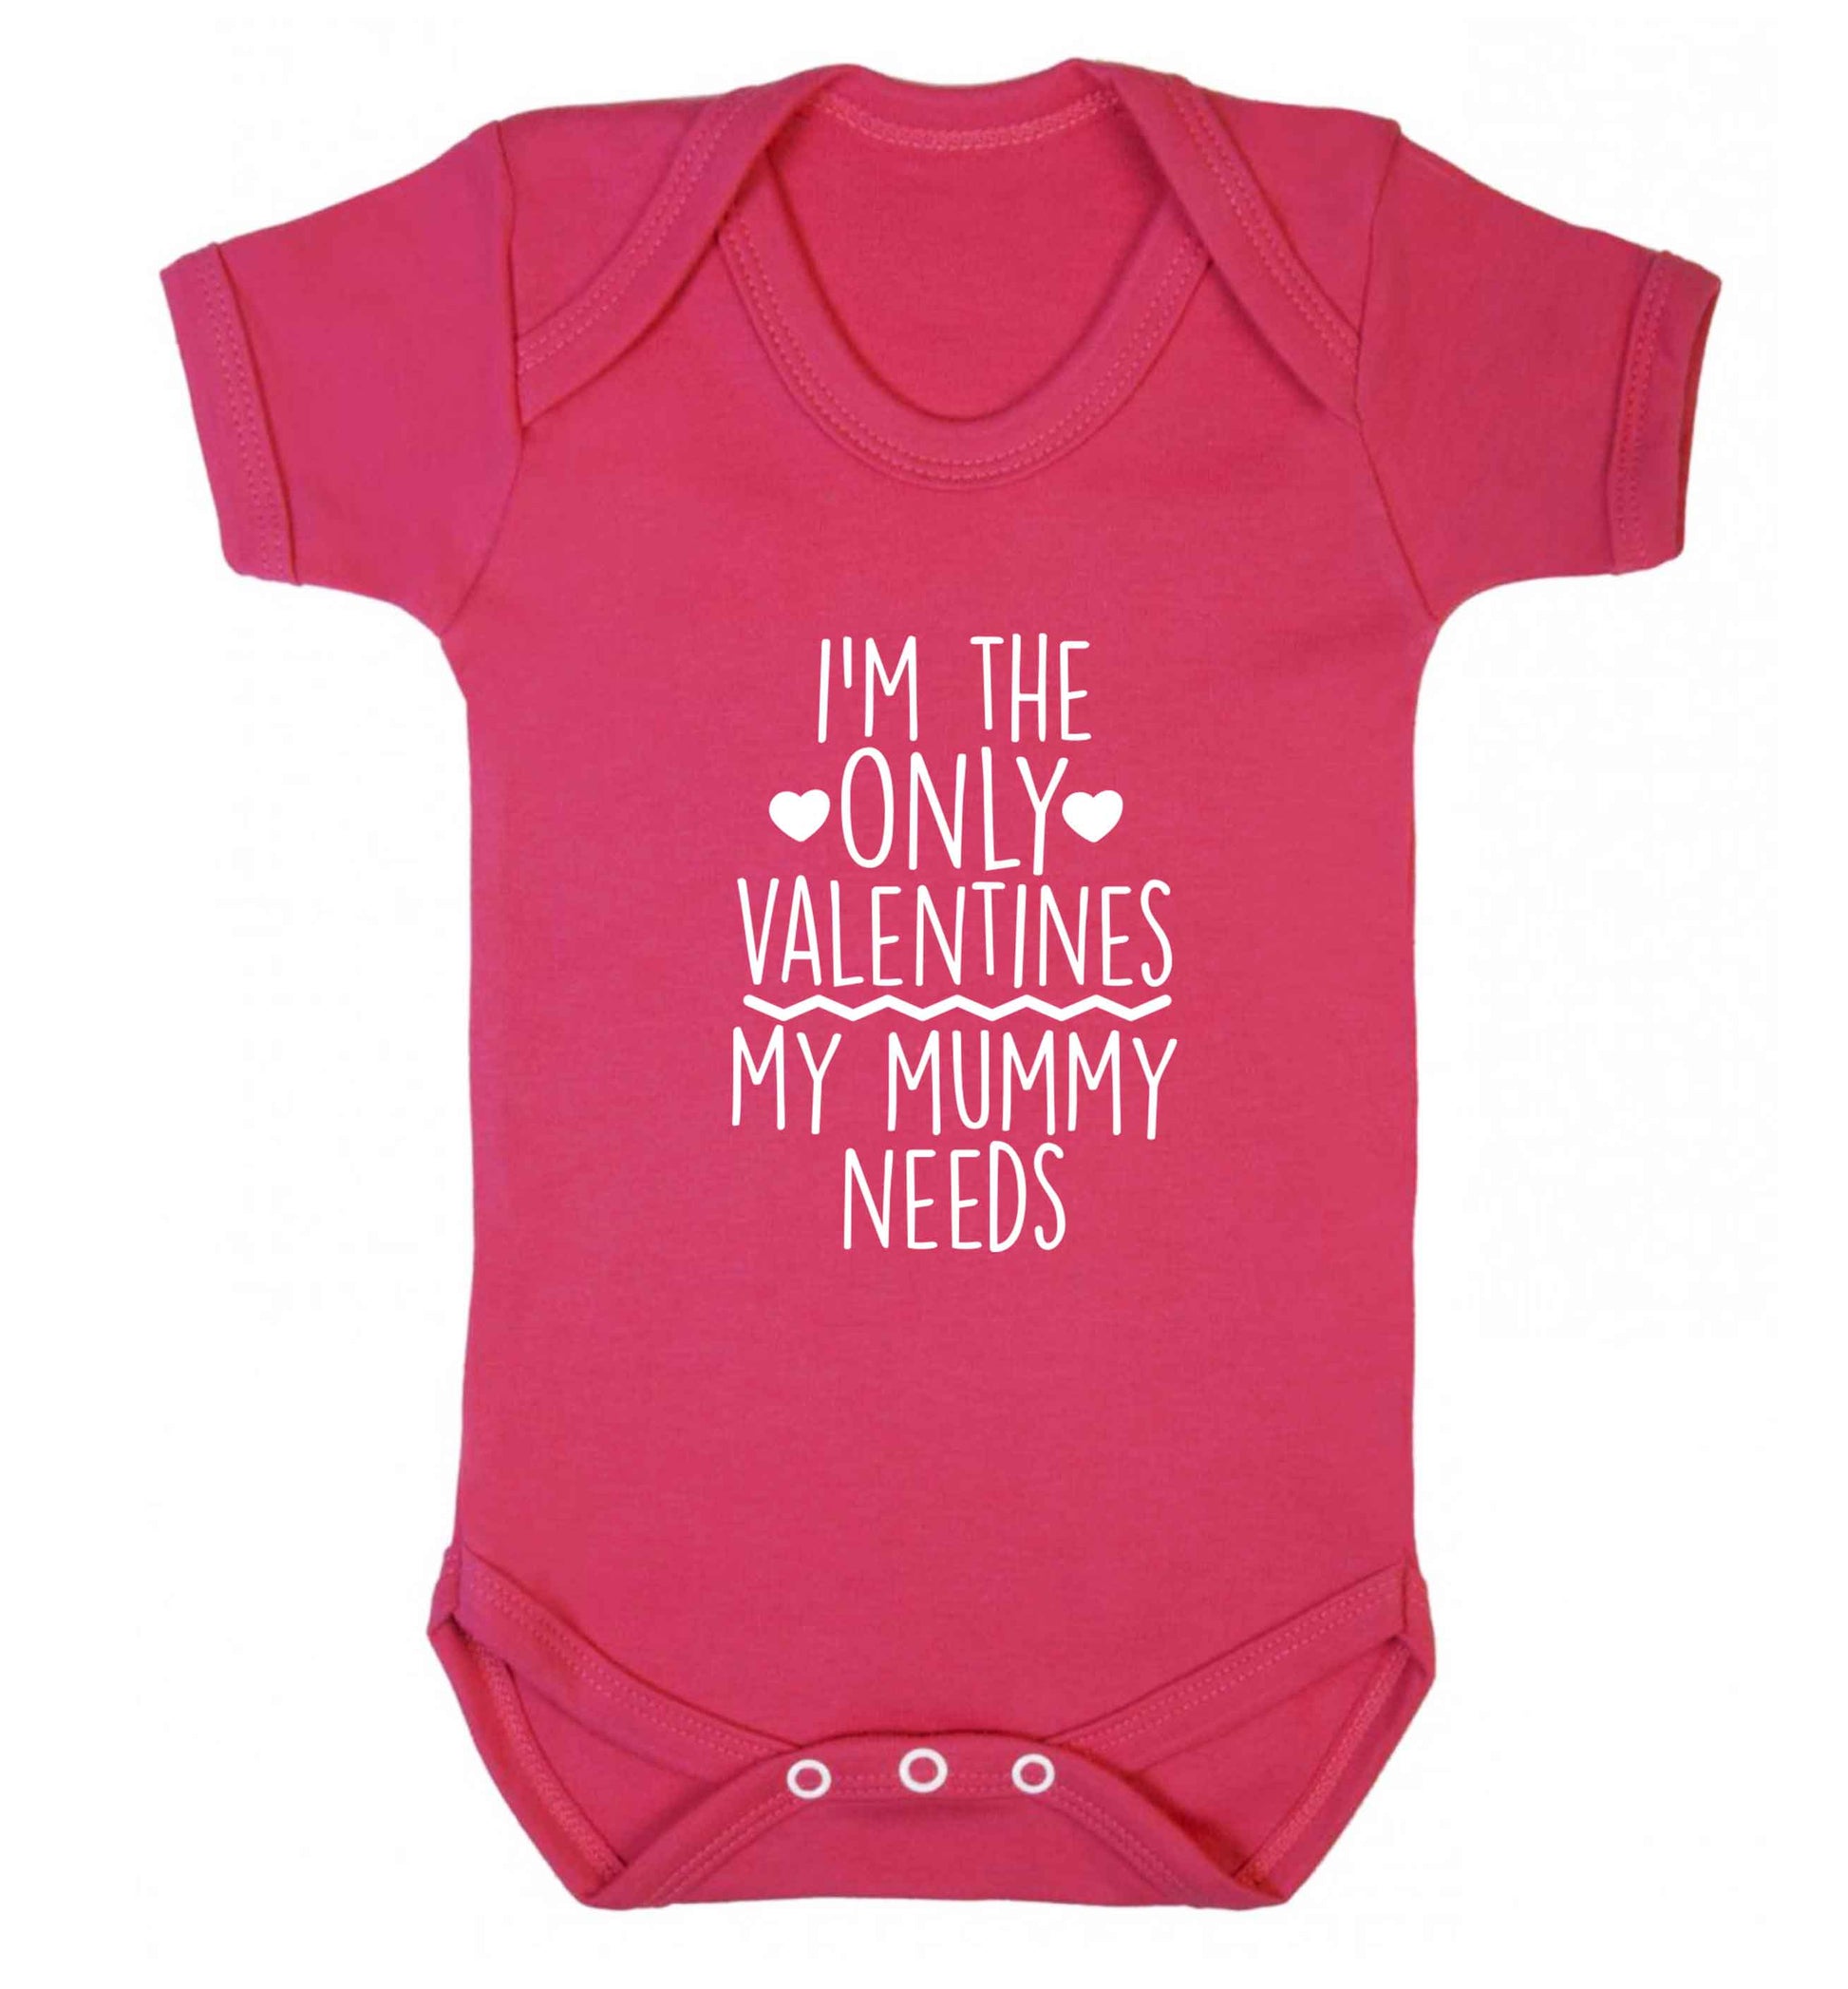 I'm the only valentines my mummy needs baby vest dark pink 18-24 months